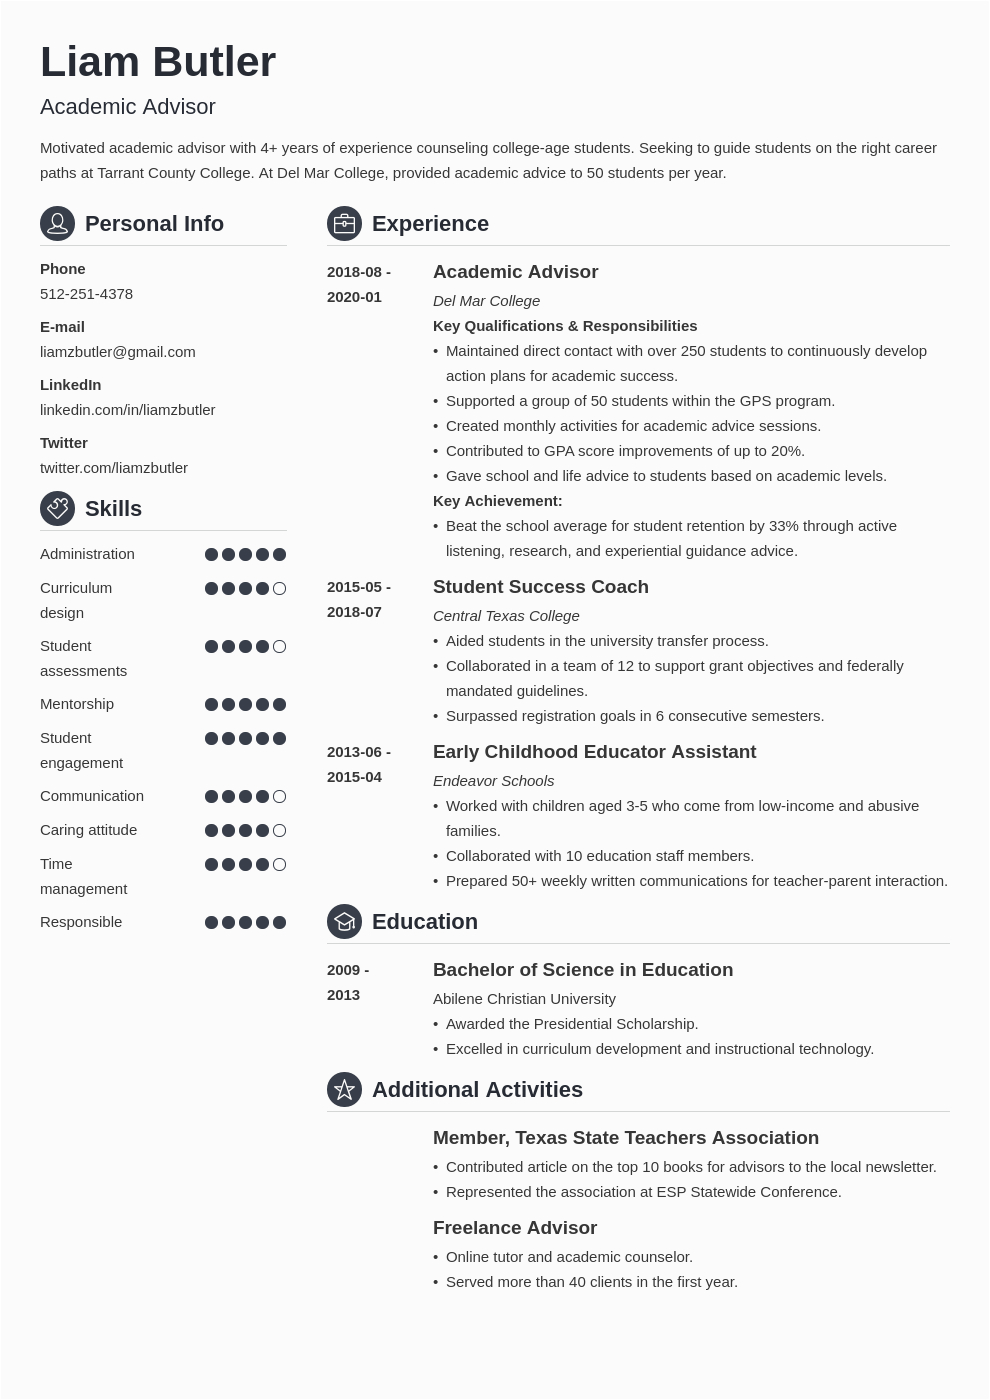 Sample Resume for Academic Advisor Position Academic Advisor Resume Samples and Writing Guide